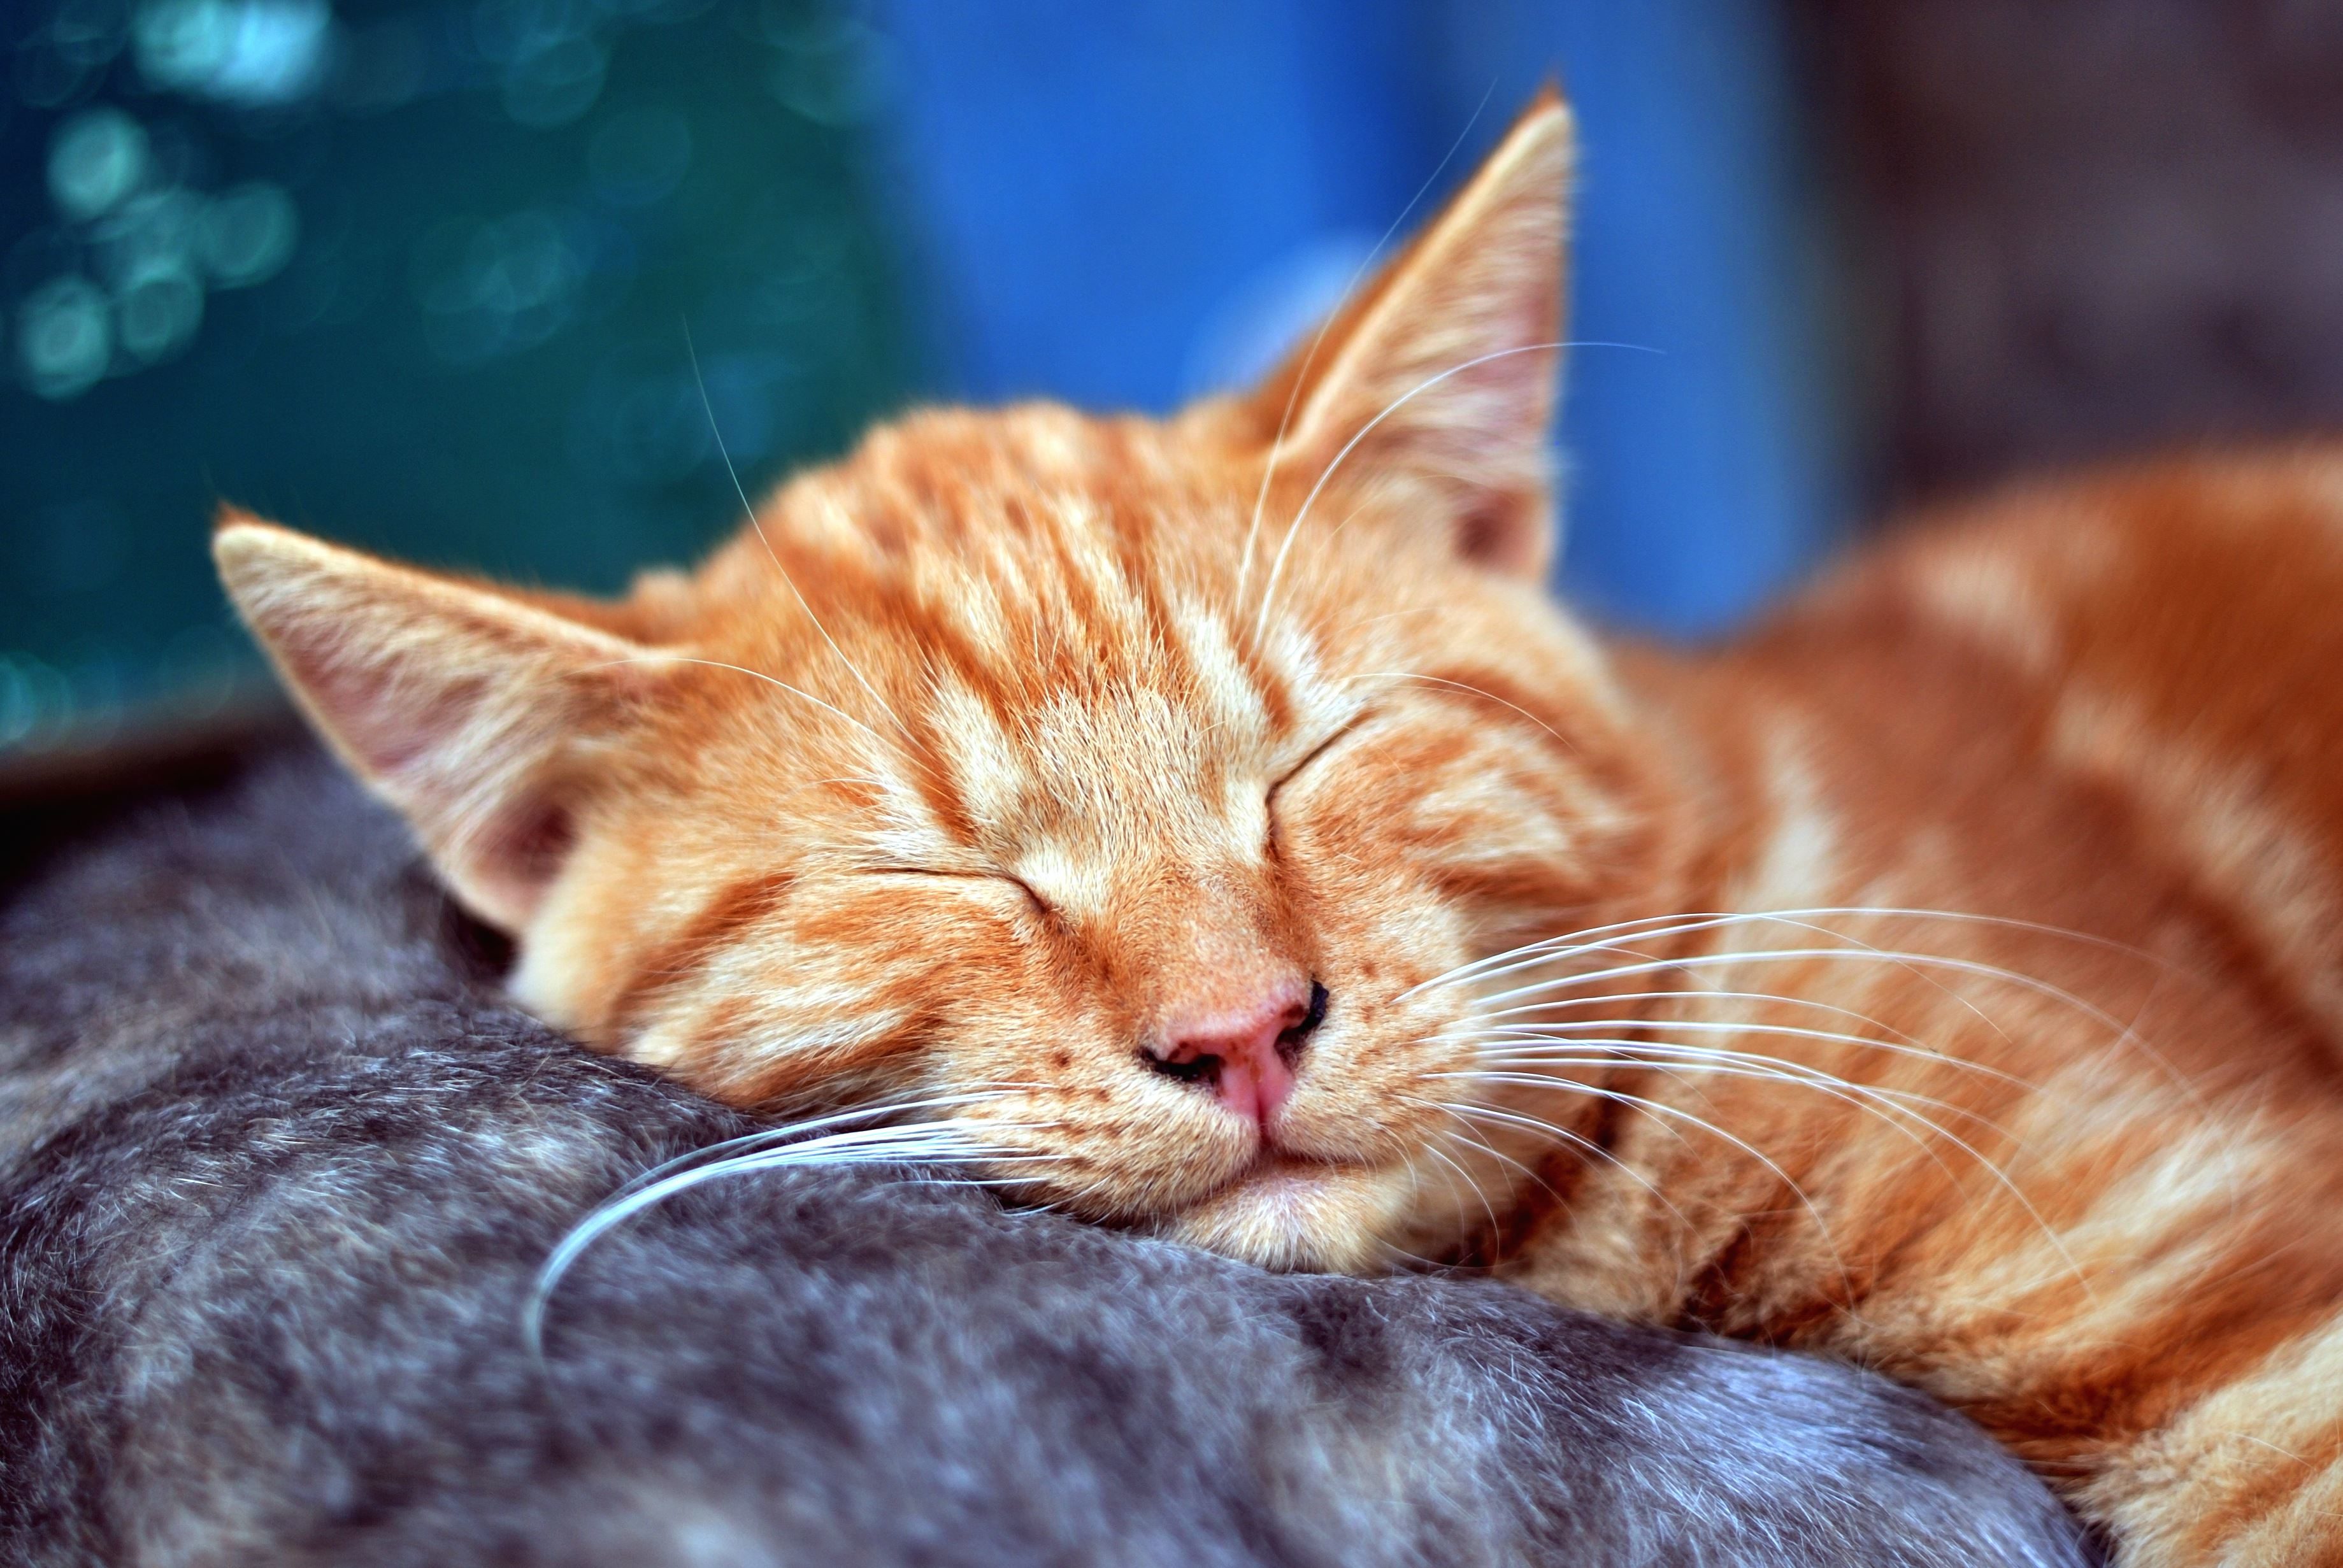 免费照片 猫 睡眠 小猫 动物 宠物 肖像